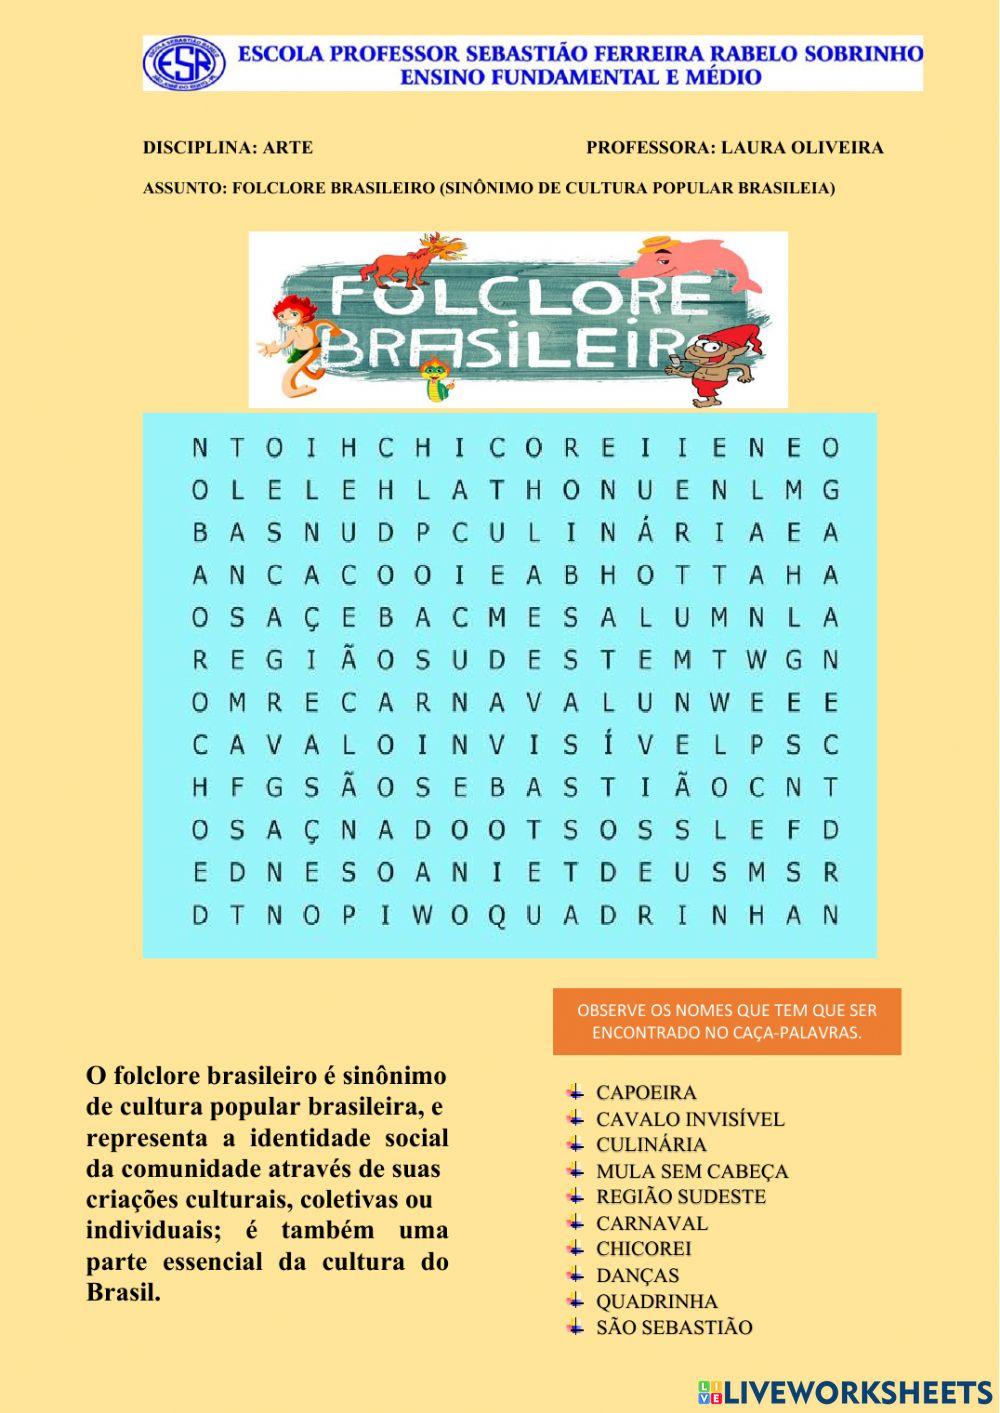 Caça-palavras folclore interactive worksheet